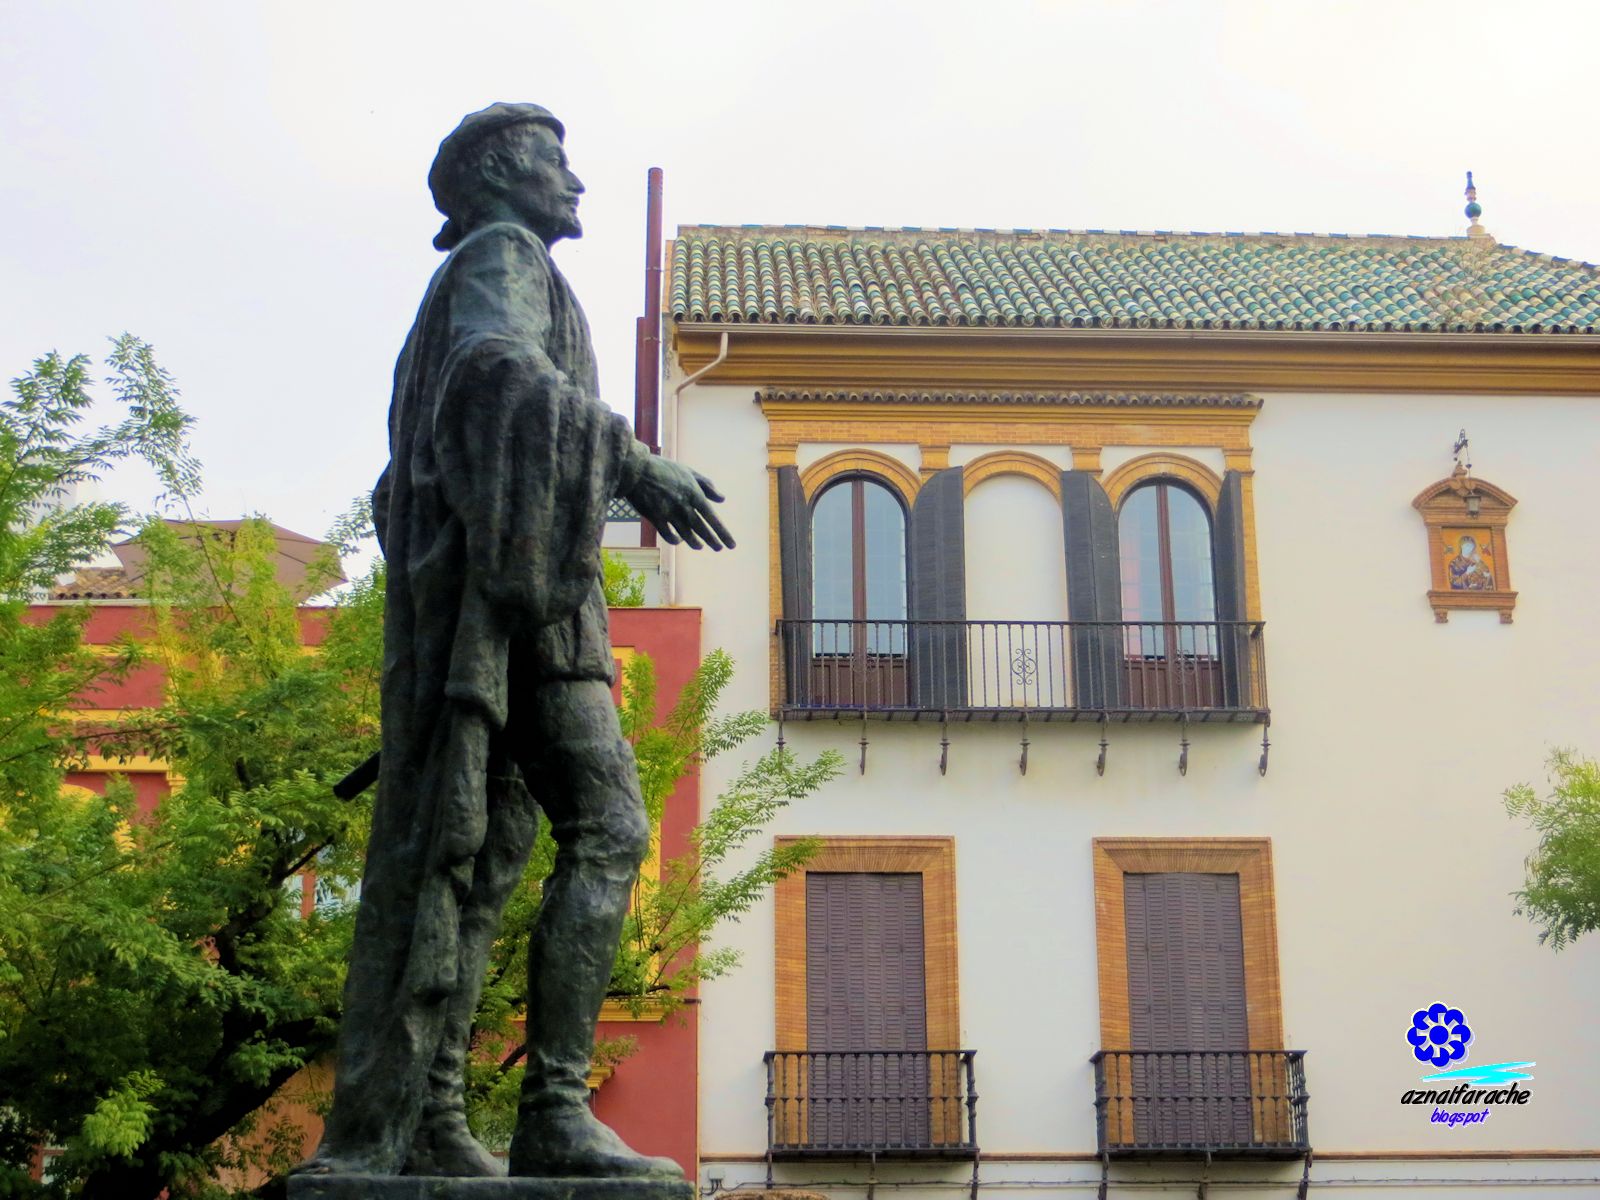 El encanto de Sevilla - Plaza de los Refinadores (Don Juan Tenorio